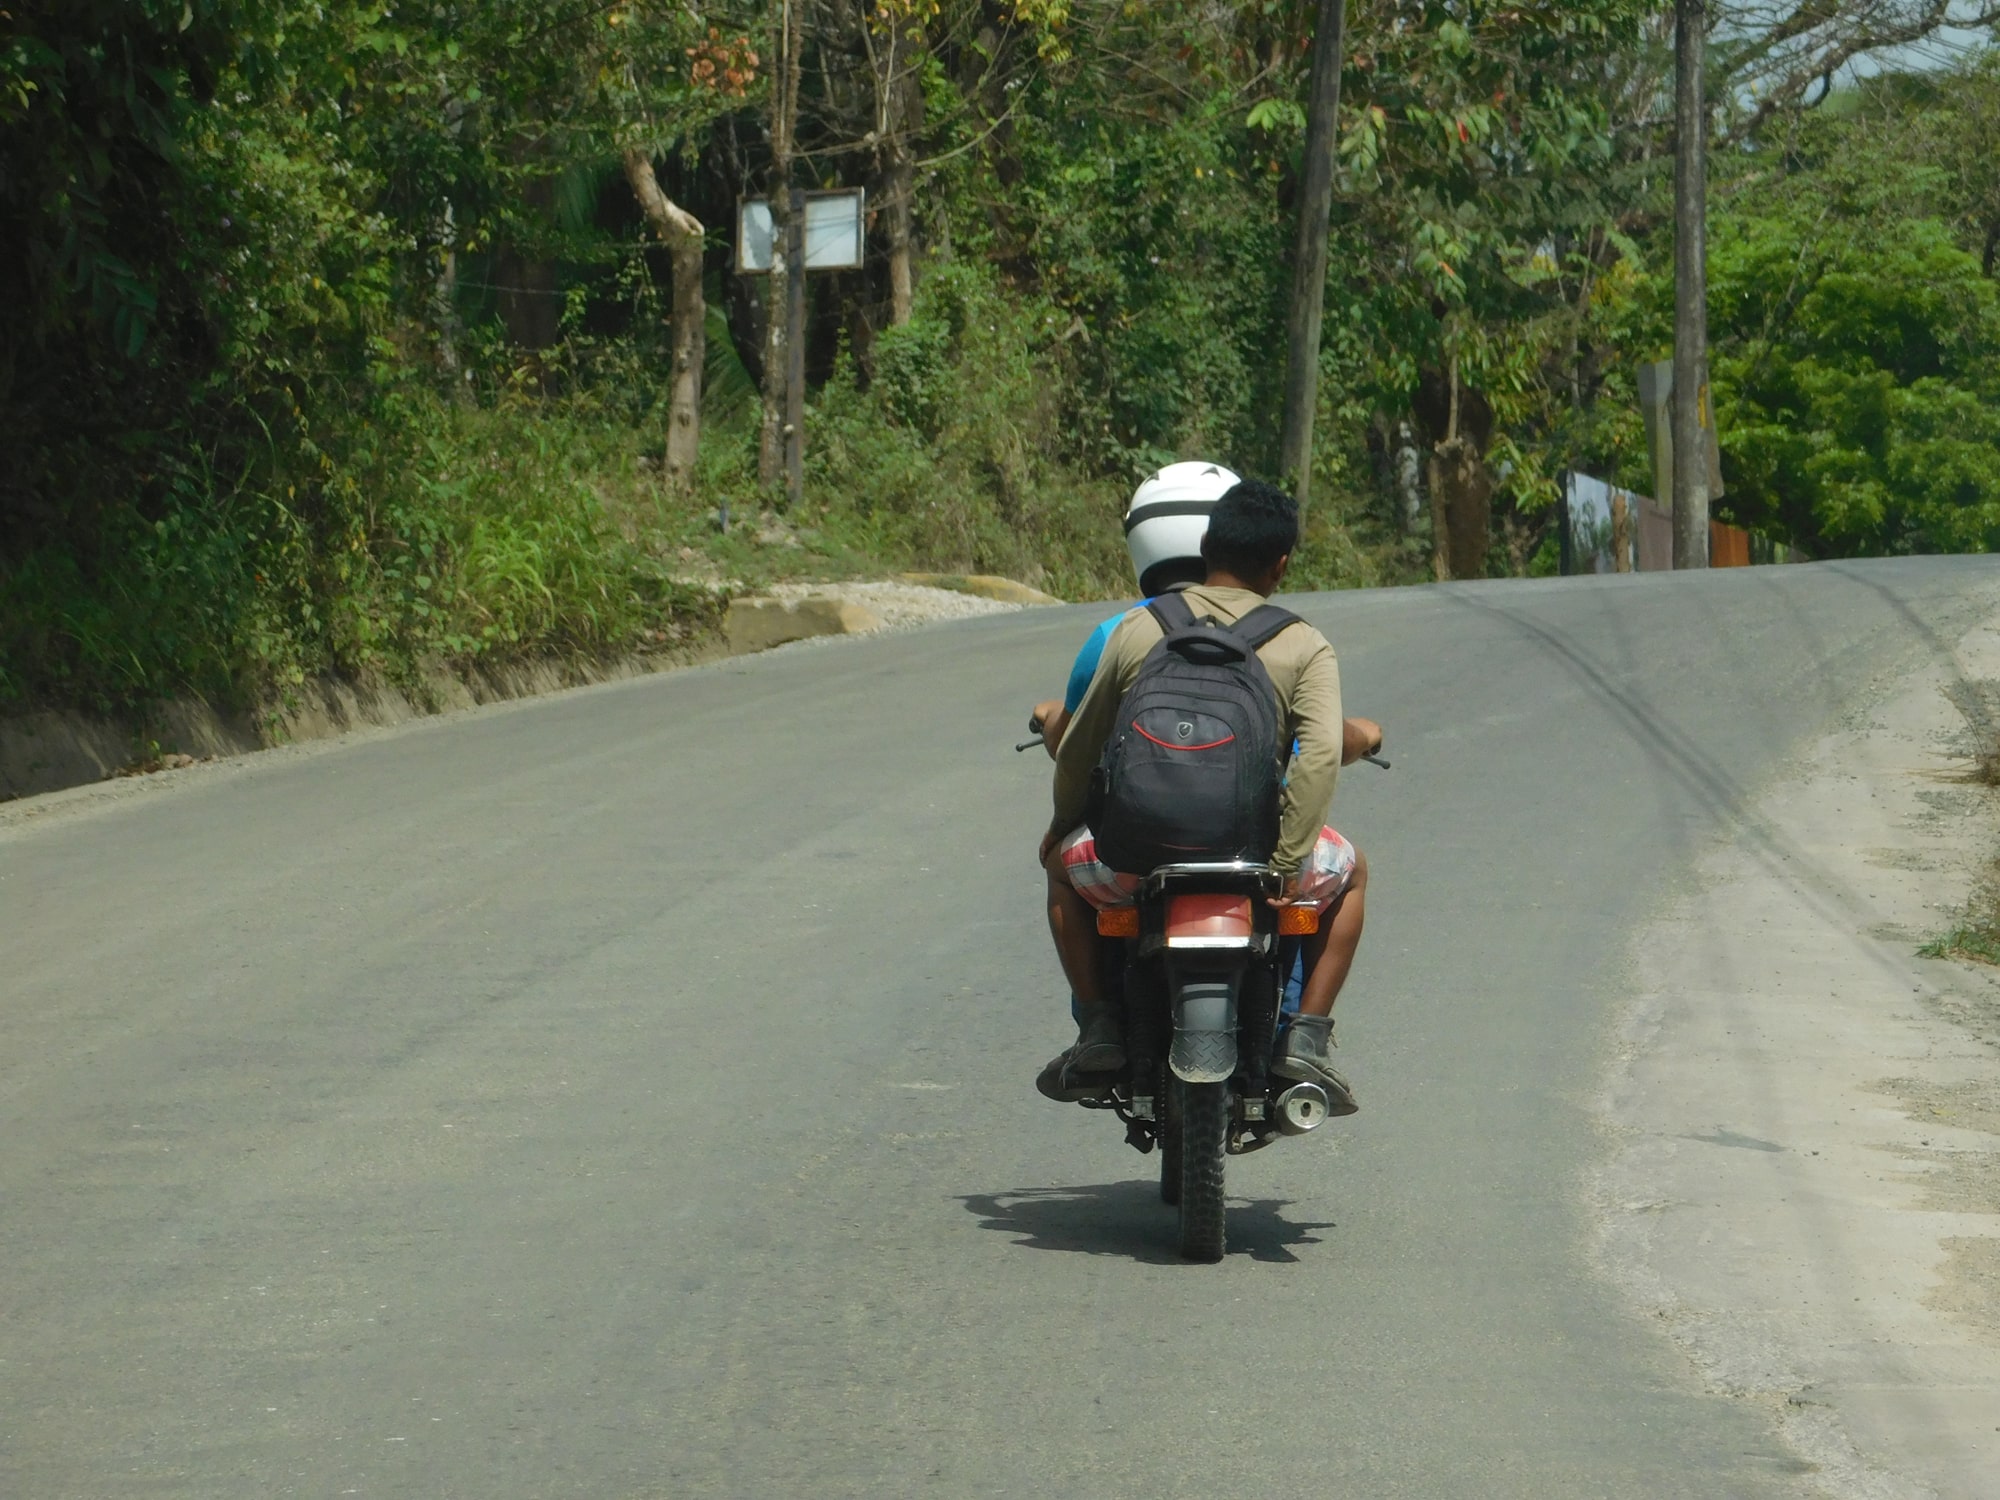 Cuatro cantones de Costa Rica acumulan la mayor cantidad de motociclistas muertos en carretera